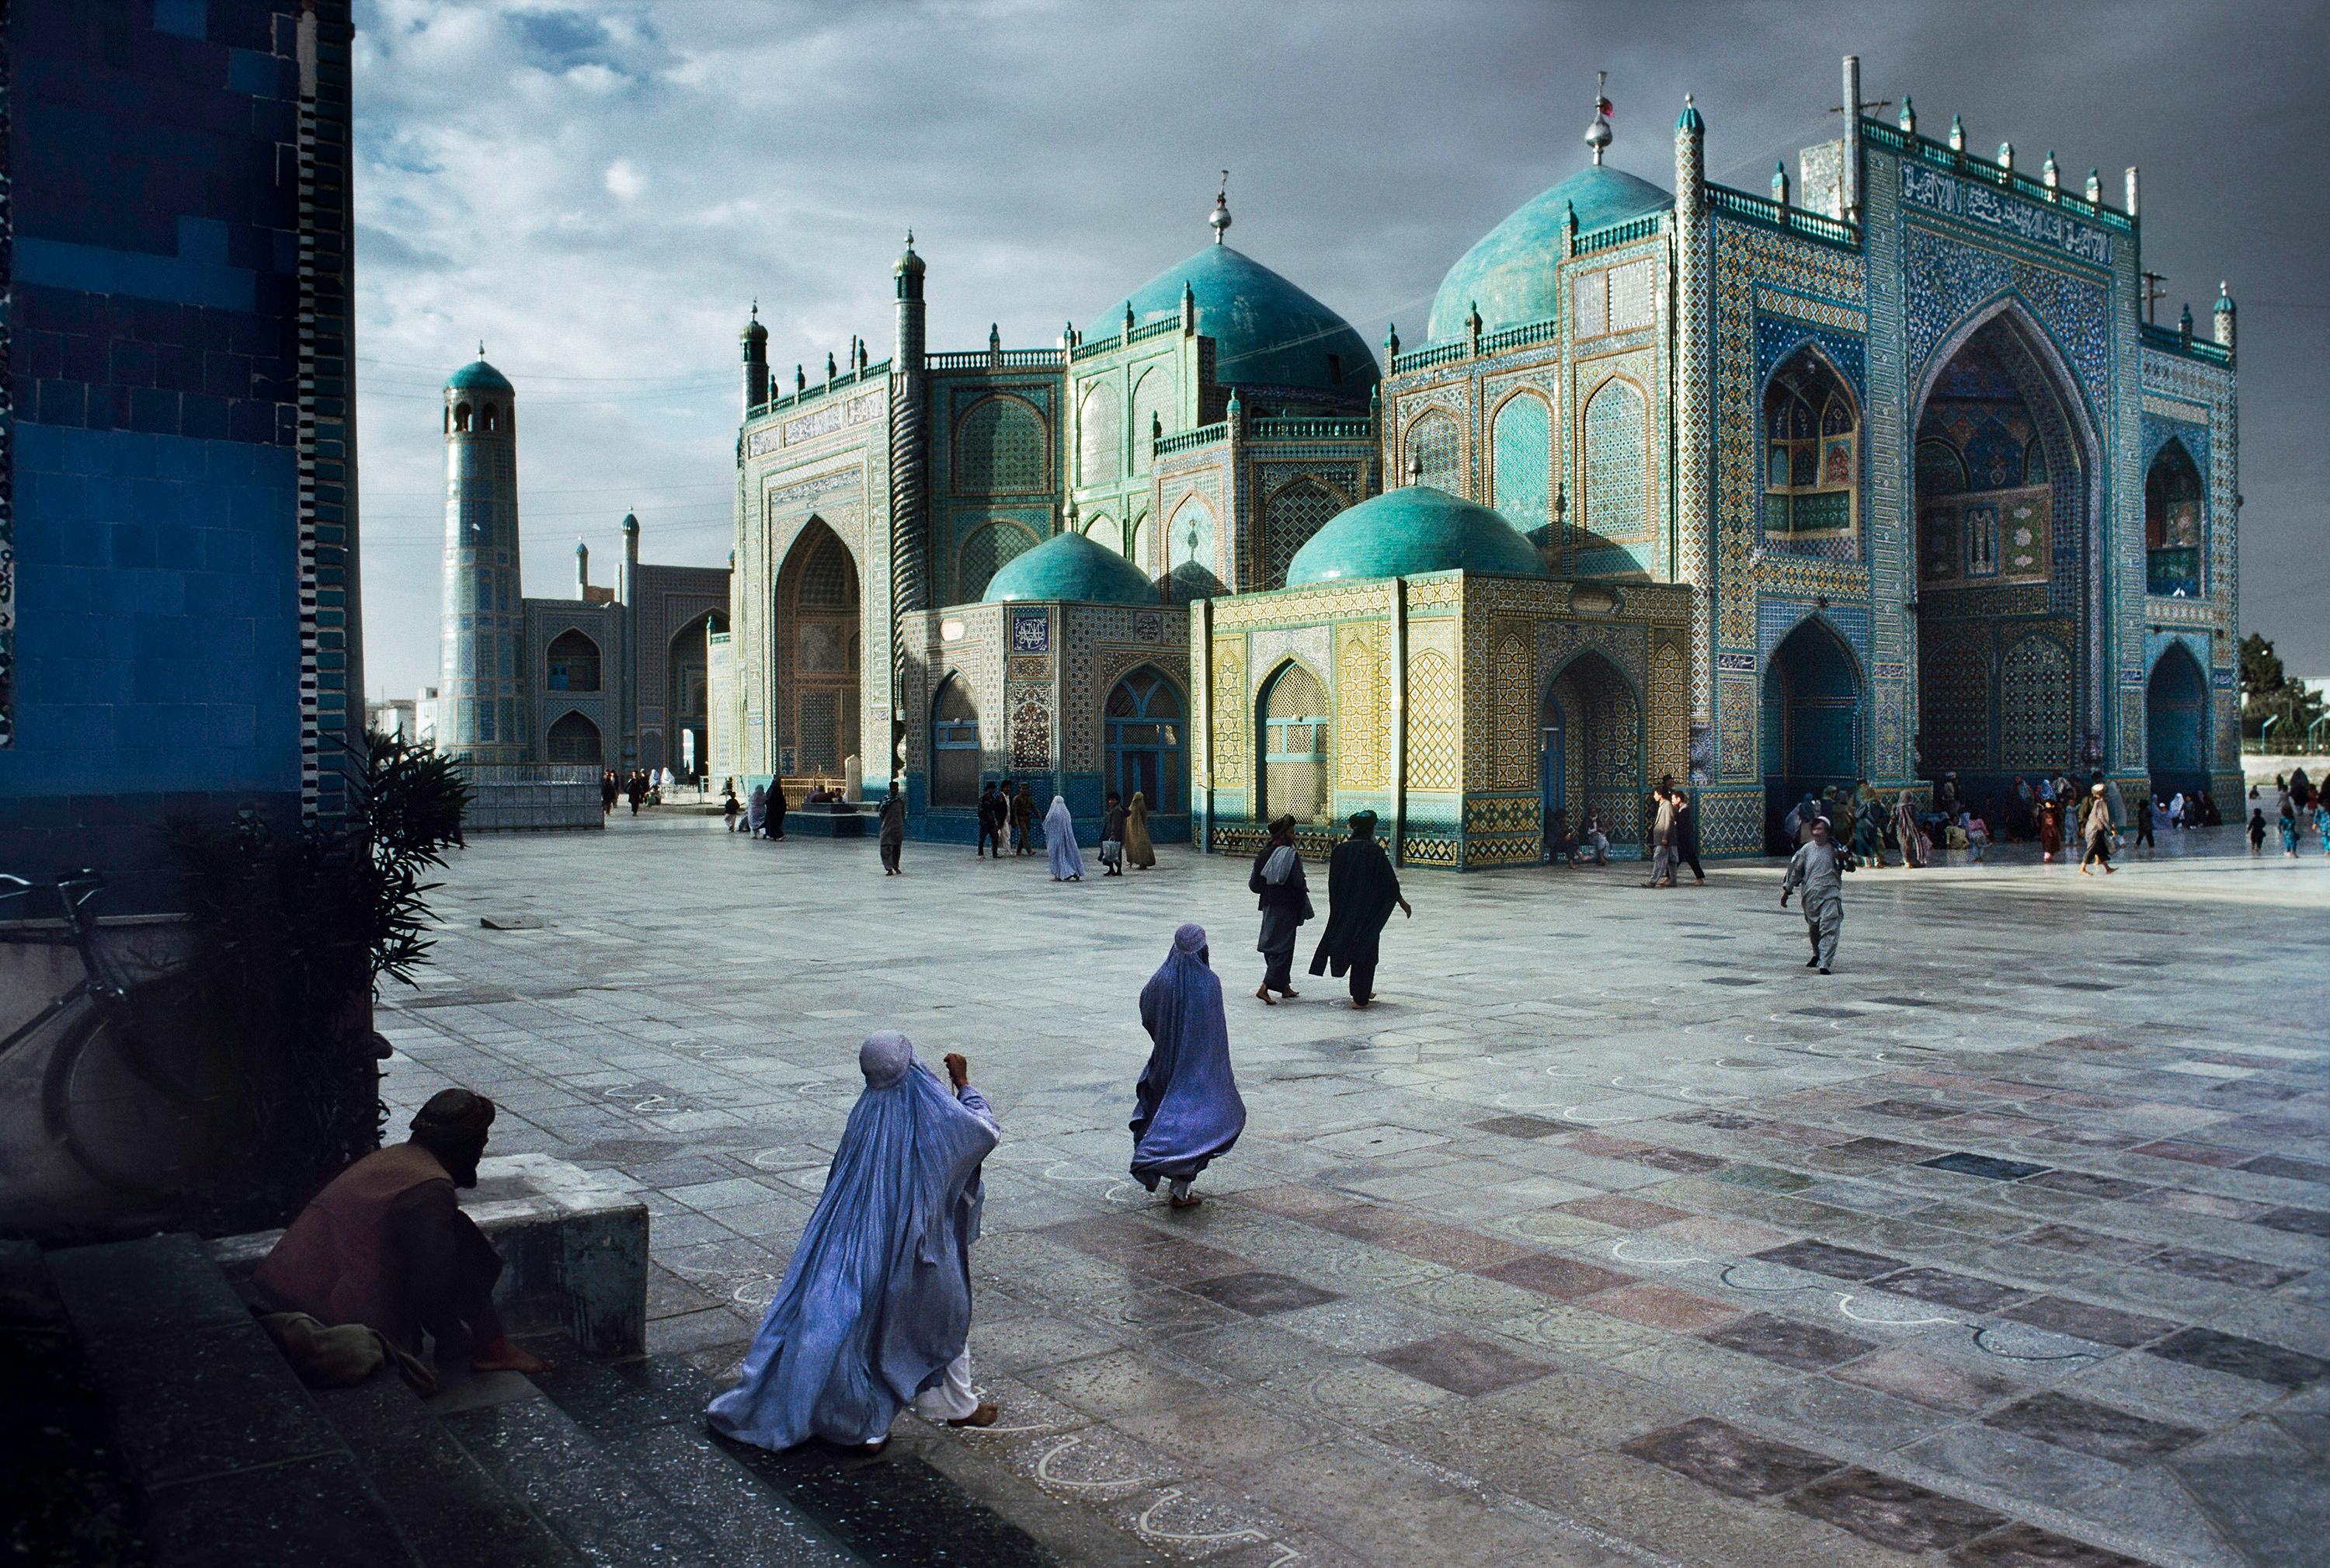 Salat at Blue Mosque in Mazar-E-Sharif, 1992 - Steve McCurry (photographie couleur)
Signé, apposé avec le label d'édition de l'artiste et numéroté au verso.
A.I.C.C. numérique

20 x 24 pouces, édition de 30
30 x 40 pouces, édition de 15
40 x 60